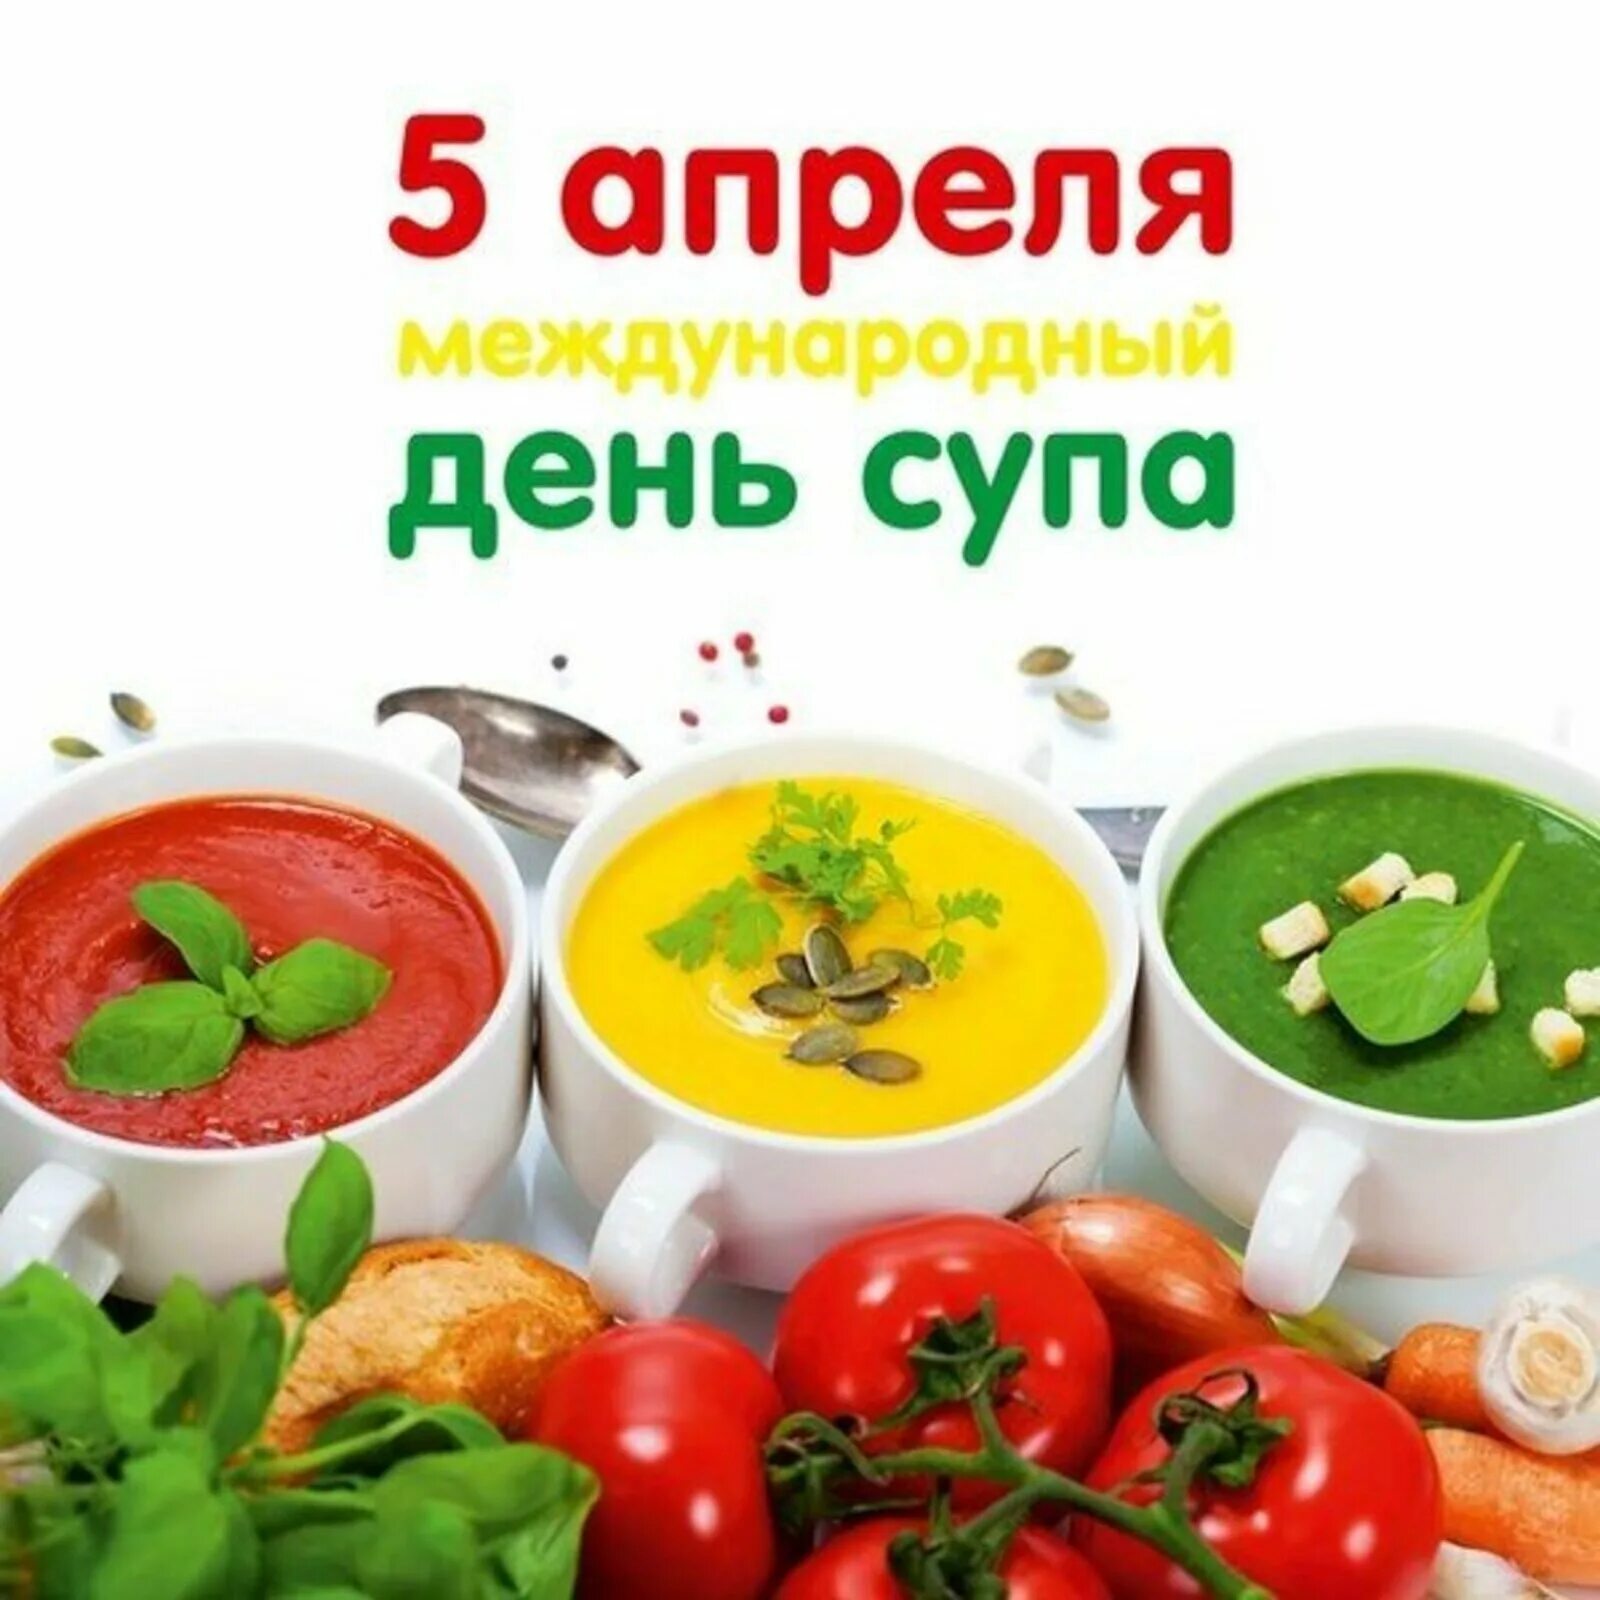 Добавлена 5 апреля. Международный день супп. Международный день супа. Всемирный день супа 5 апреля. День супа 5 апреля.